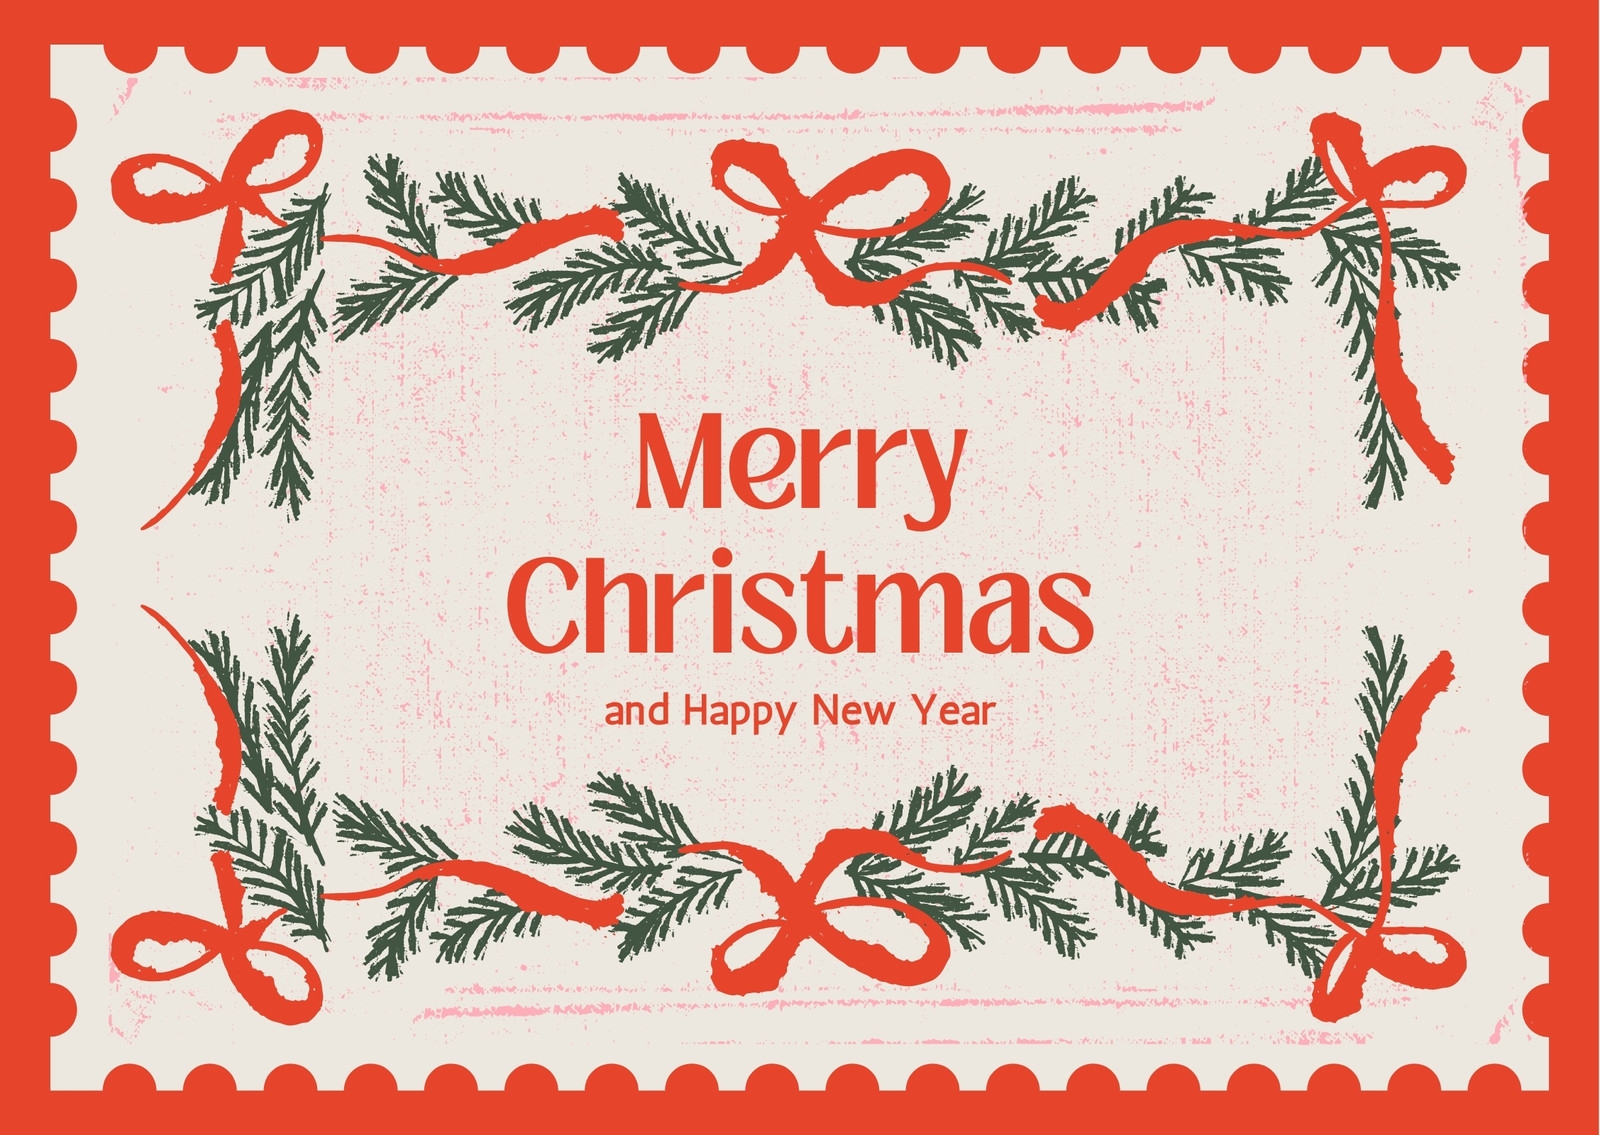 Free Custom Printable Christmas Card Templates Canva - Create Your Own Free Printable Christmas Cards